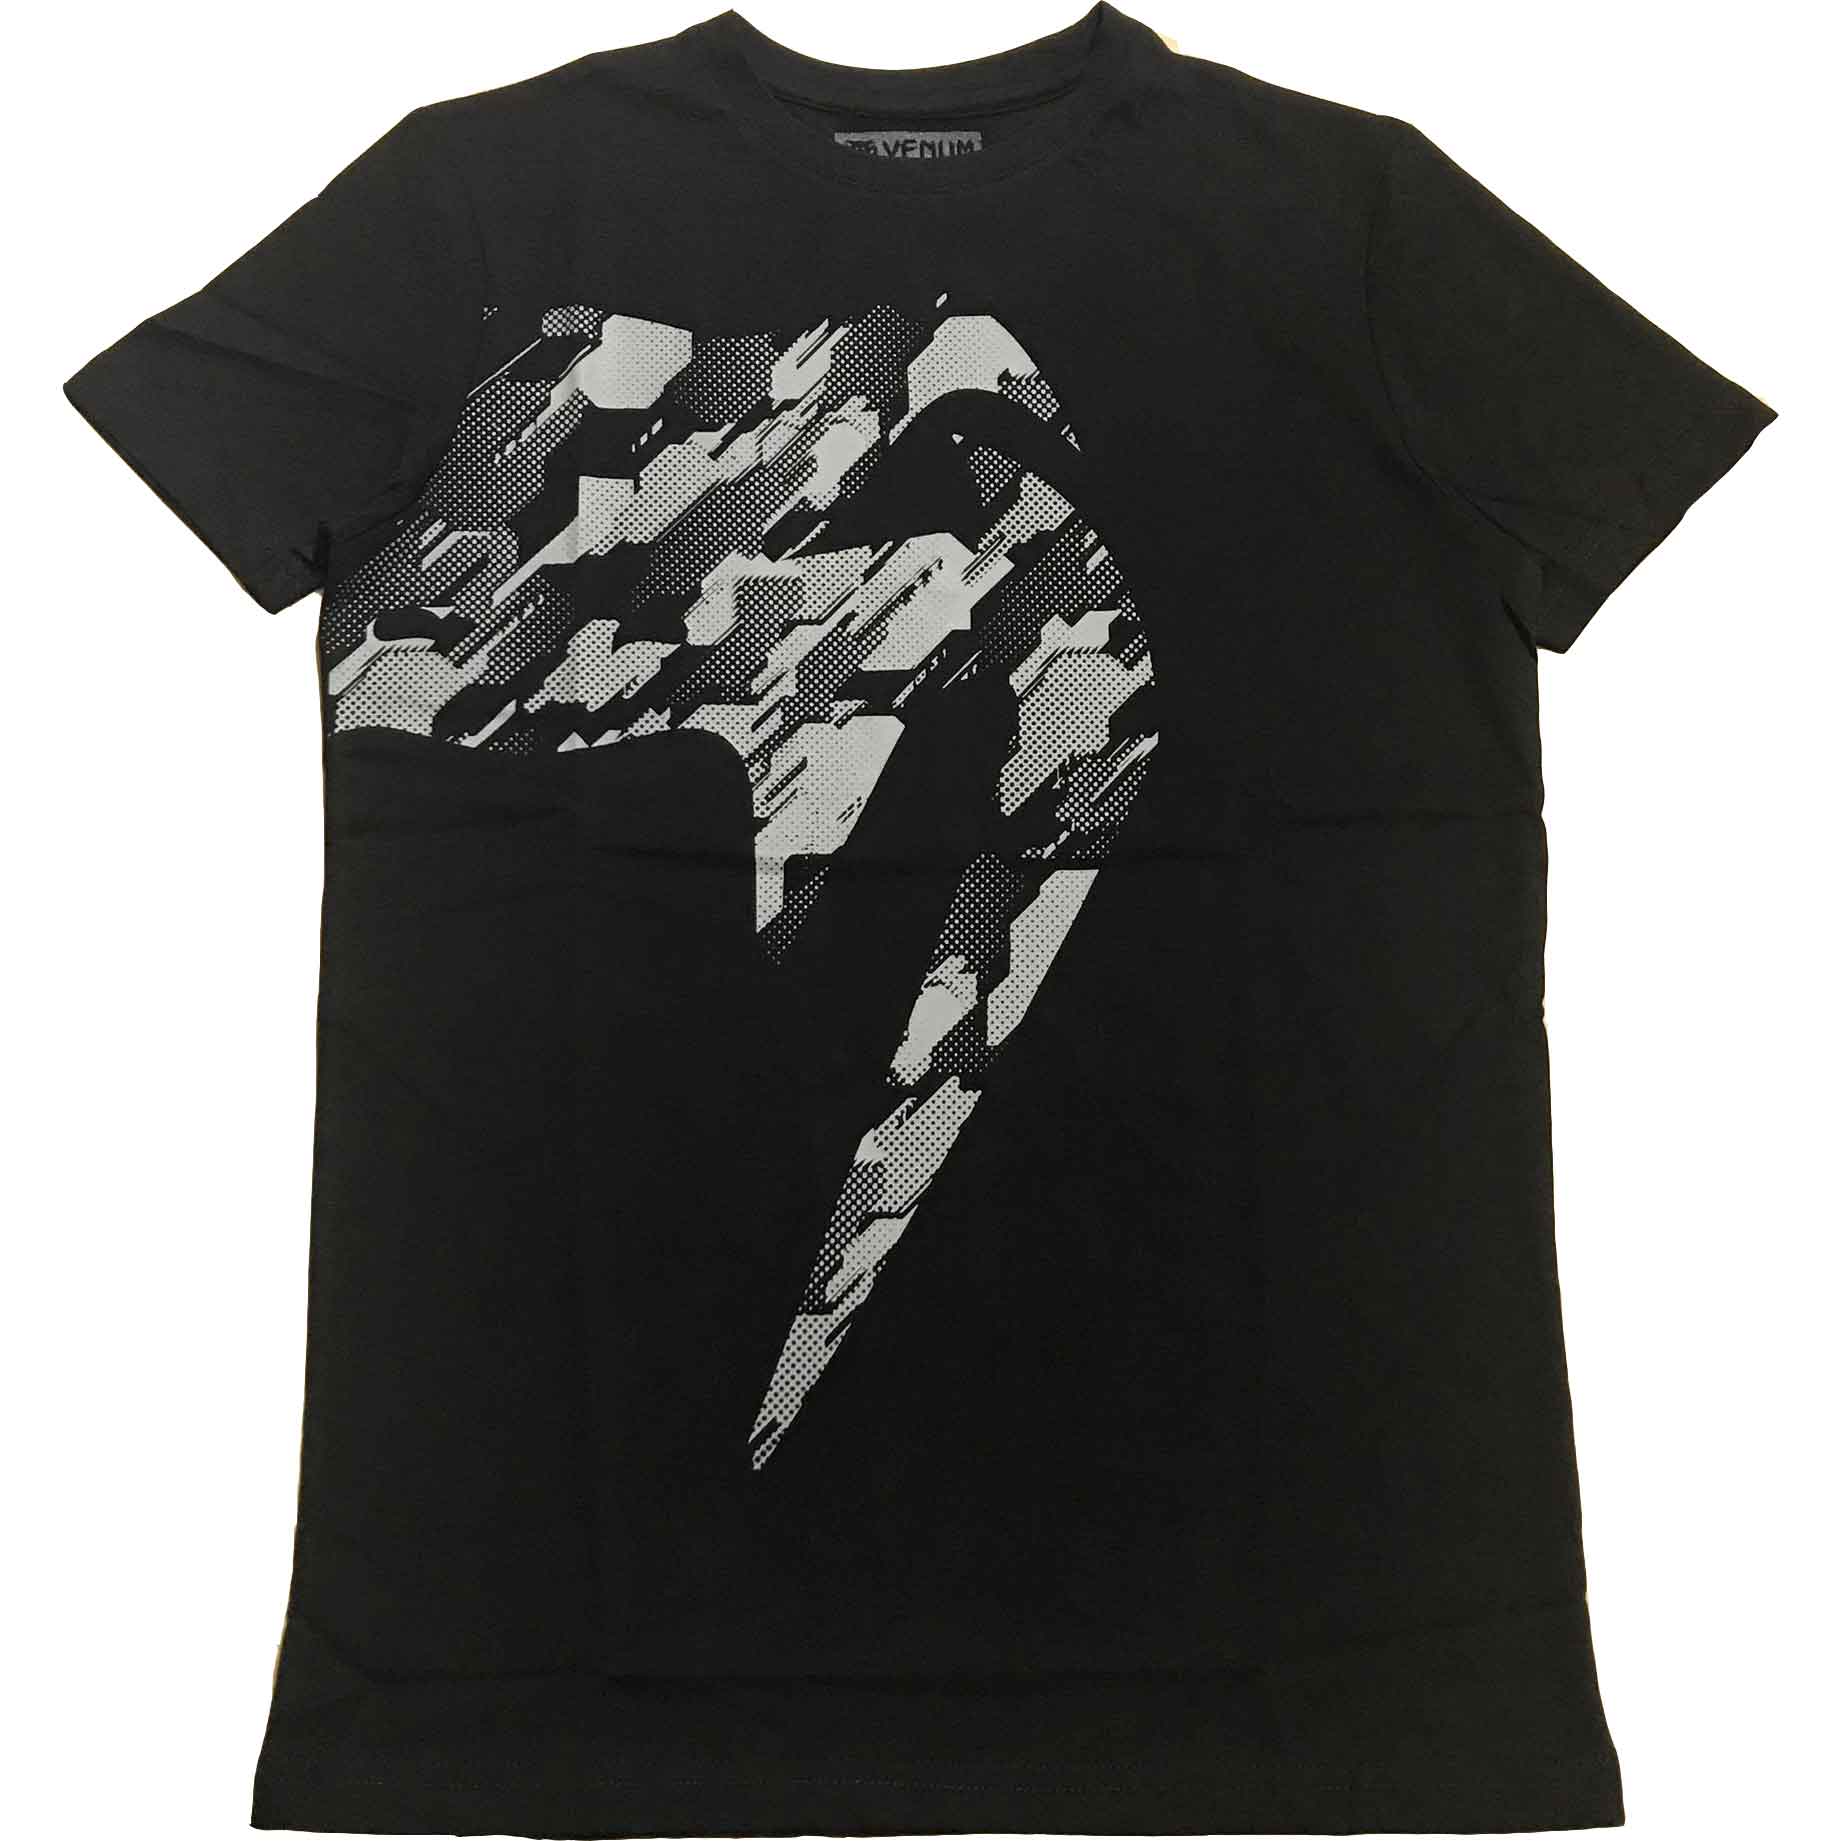 VENUM/ヴェナム GIANT Exclusive Edition T-SHIRT／ジャイアント 独占限定販売版 Tシャツ